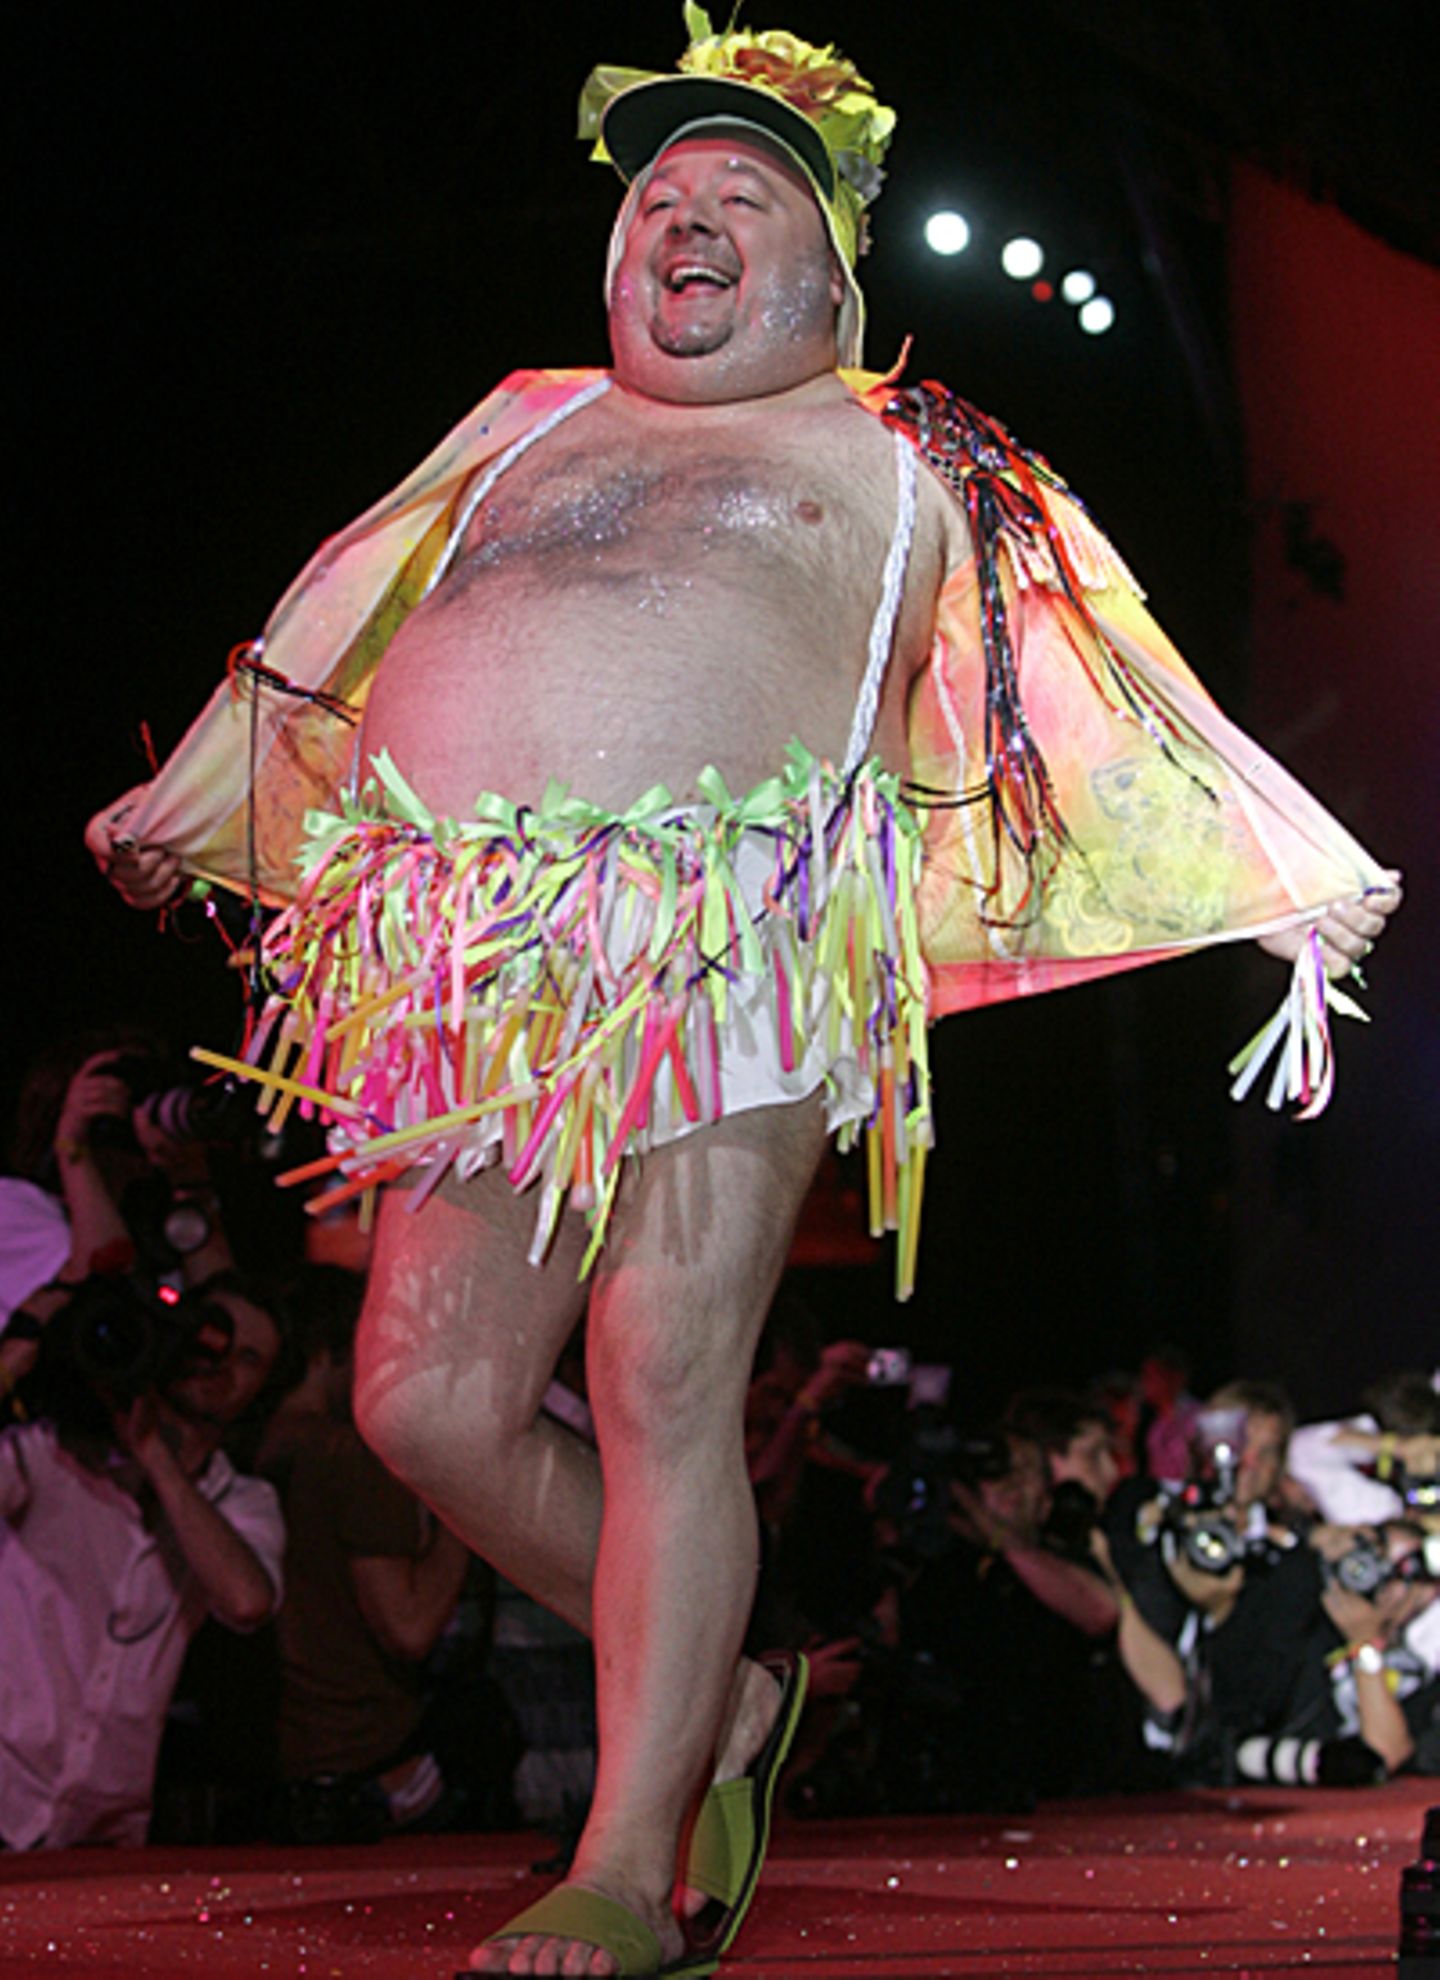 Dieser Bauch war sein Markenzeichen, den Dirk Bach bei einer Modenschau anlässlich des "Life Balls" in Wien 2007 freudestrahlend